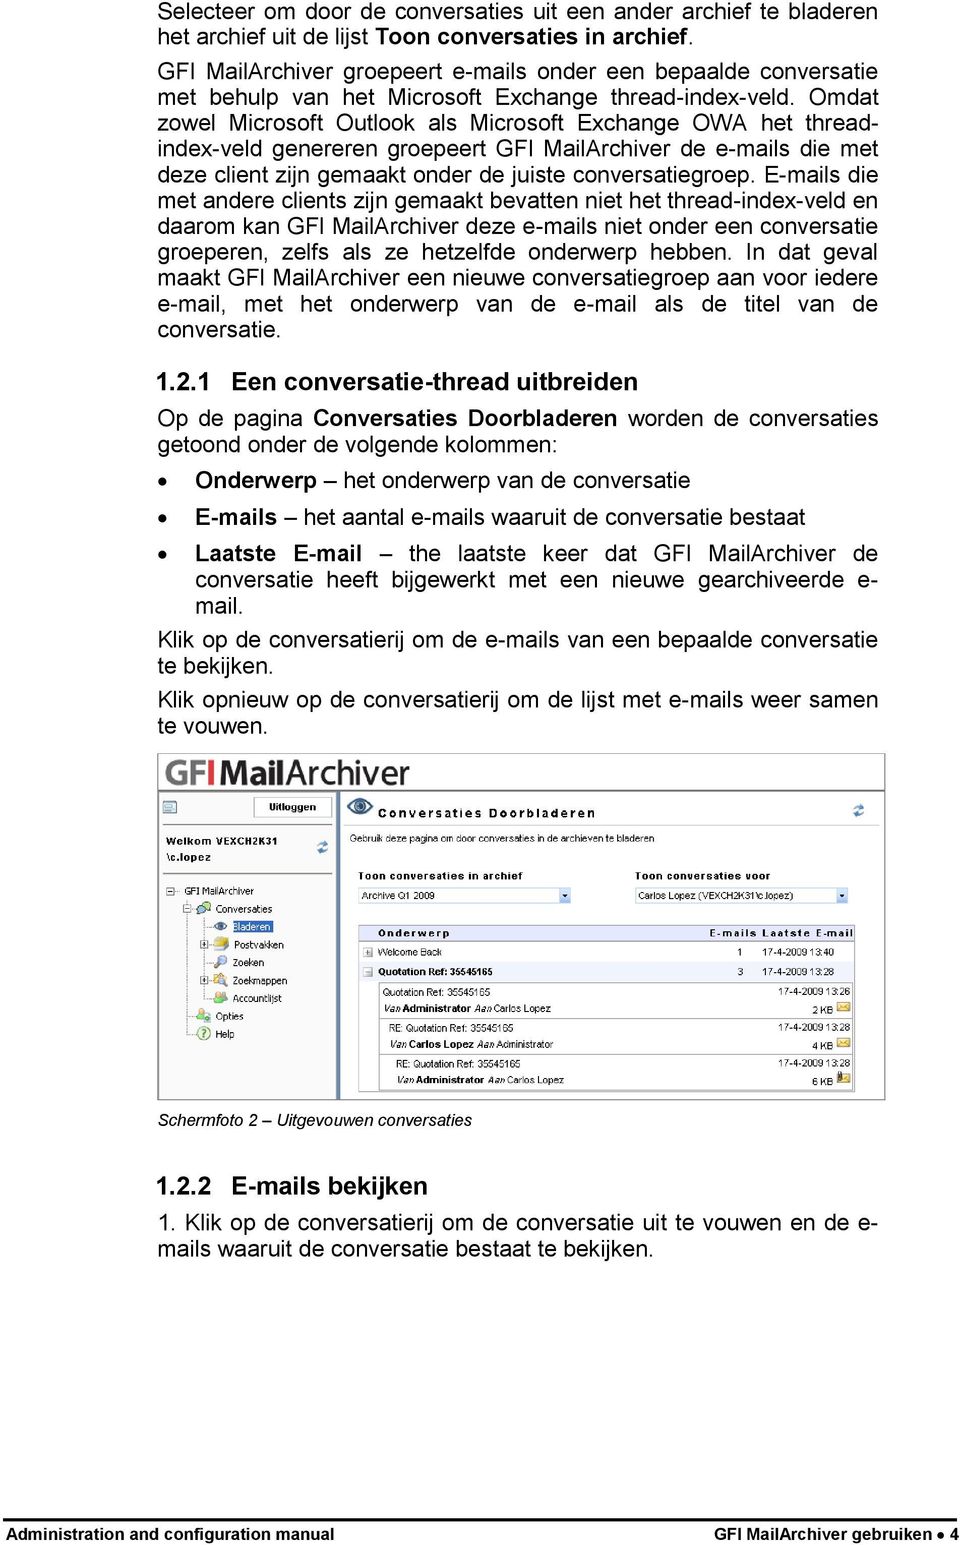 Omdat zowel Microsoft Outlook als Microsoft Exchange OWA het threadindex-veld genereren groepeert GFI MailArchiver de e-mails die met deze client zijn gemaakt onder de juiste conversatiegroep.